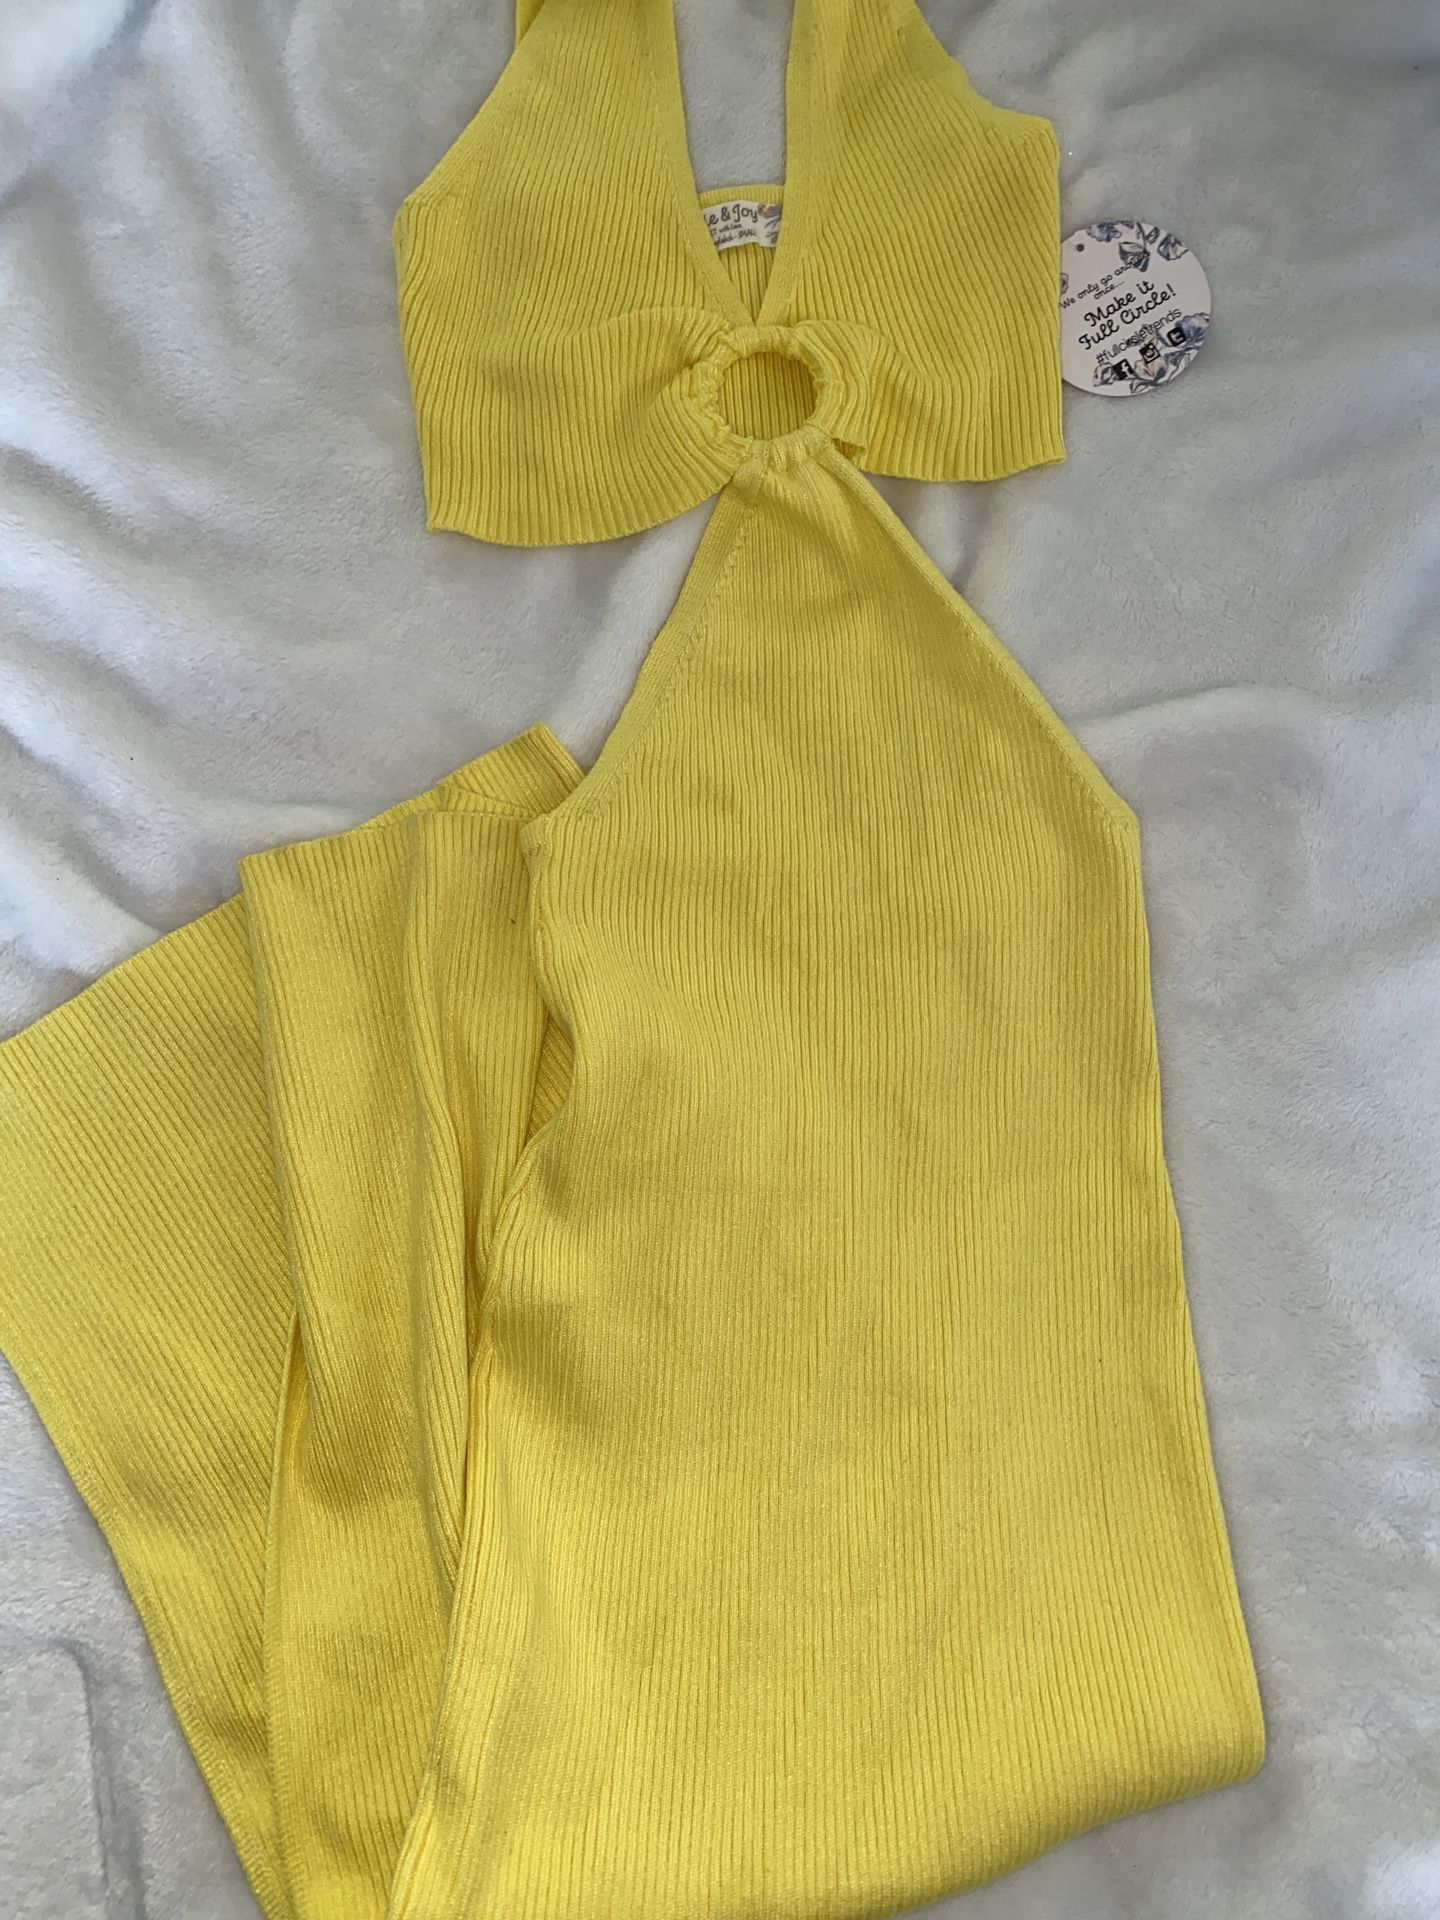 Yellow Long Dress New 